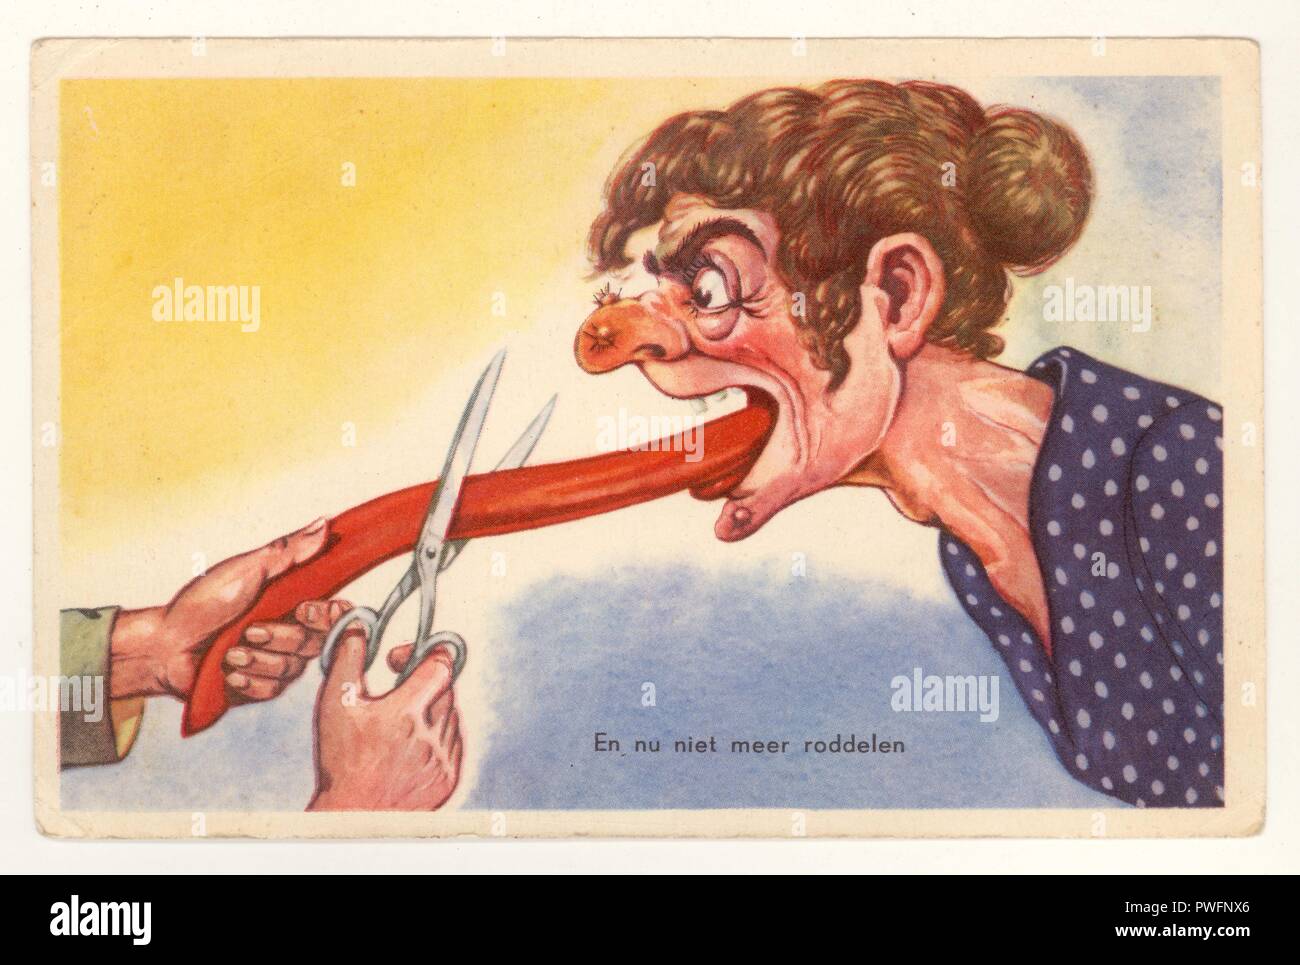 Frühe Niederländische 1900 grausam komischen Anti-Wahlrecht, anti-feministischen Postkarte, aus den Niederlanden, zeigt eine Frau, die Zunge abschneiden, sie aufzuhalten Klatschen (silencing Frauen) - Postkarte liest'en Nu niel Meer roddelen', in Holland gedruckt, möglicherweise 1930 Stockfoto